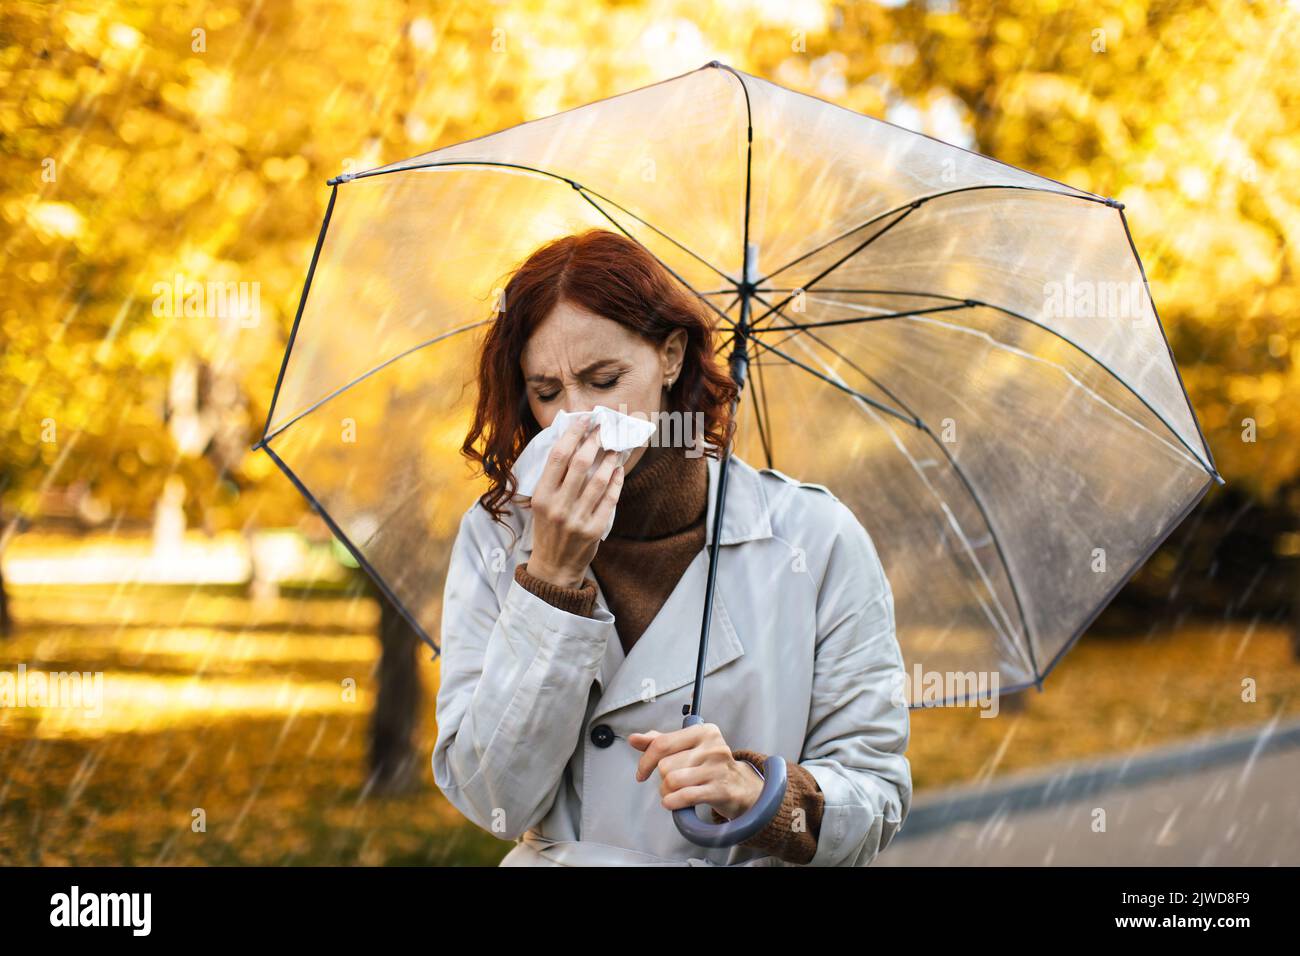 Unglückliche, tausendjährige europäische Frau im Regenmantel mit Regenschirm bläst ihre Nase auf Serviette, fühlt sich im Park schlecht Stockfoto